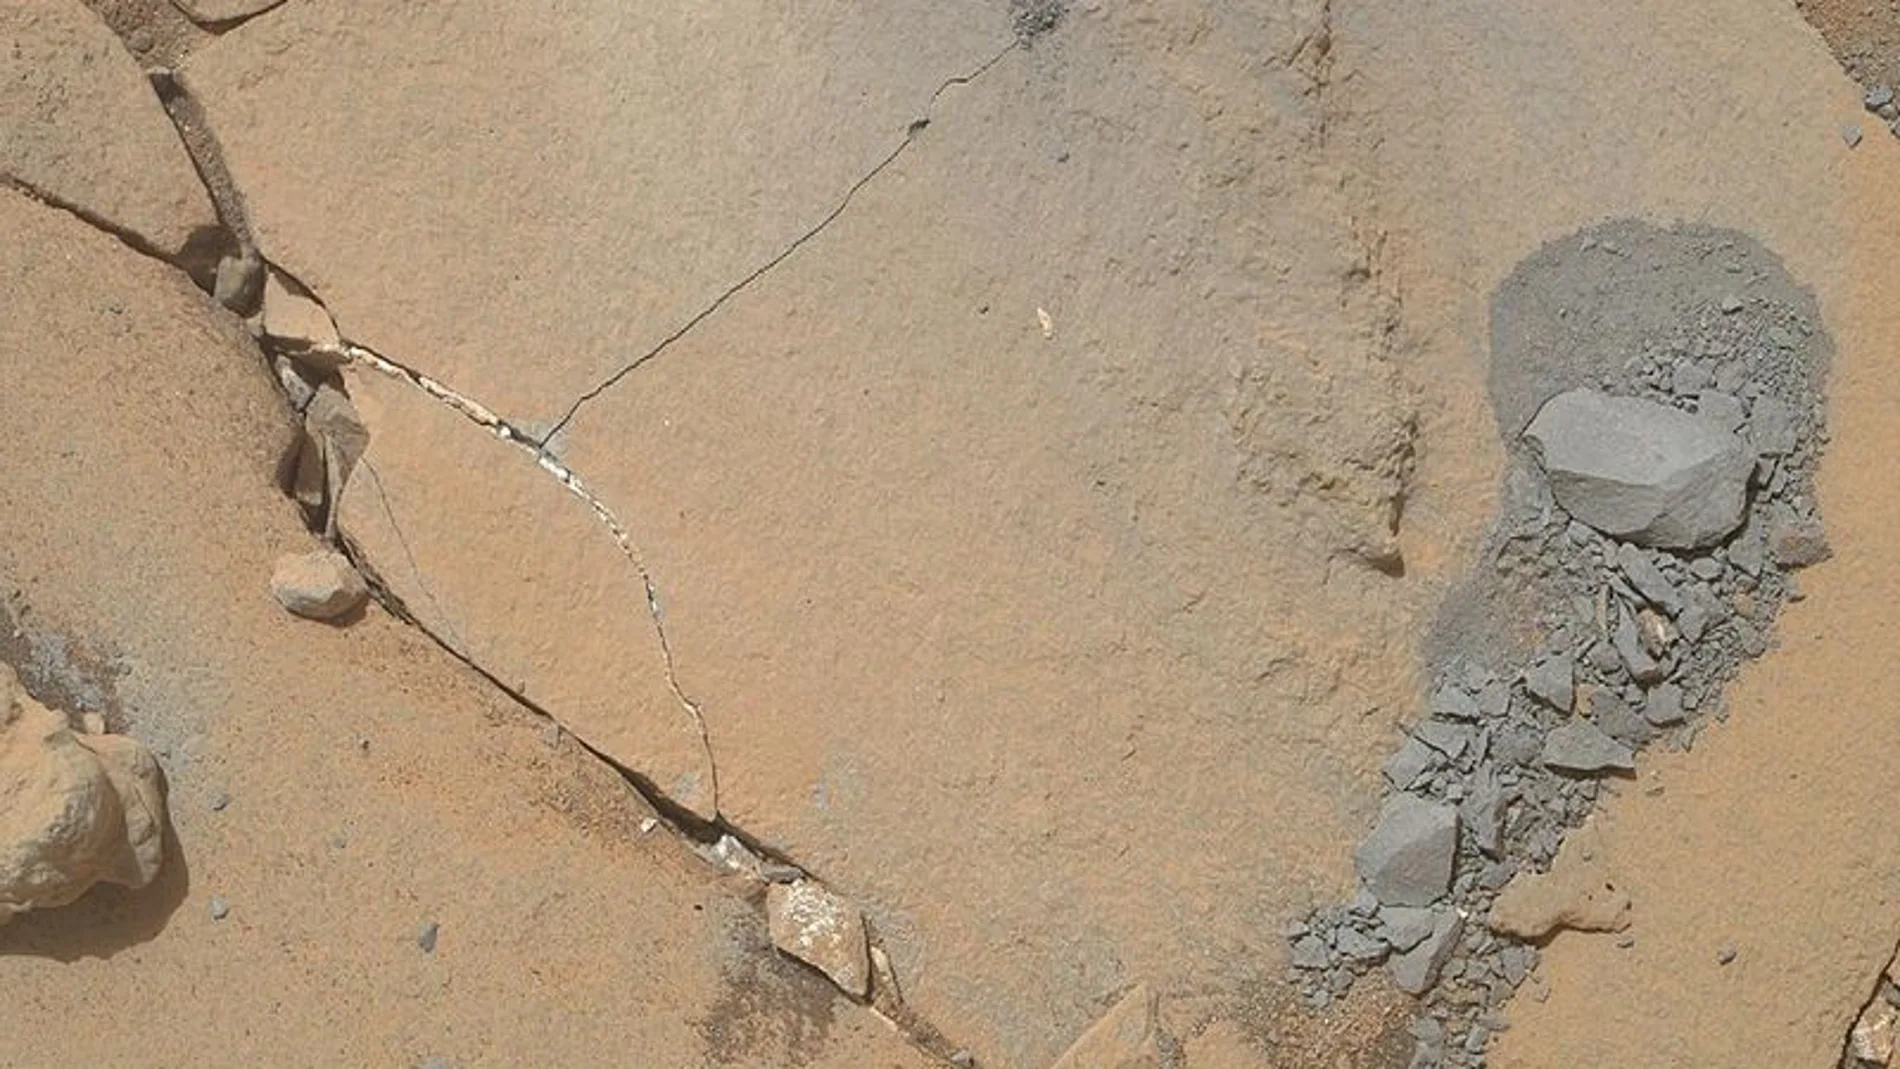 El 13 de enero Curiosity realizó una mini perforación para evaluar la idoneidad de la roca para llevar a cabo una perforación más profunda